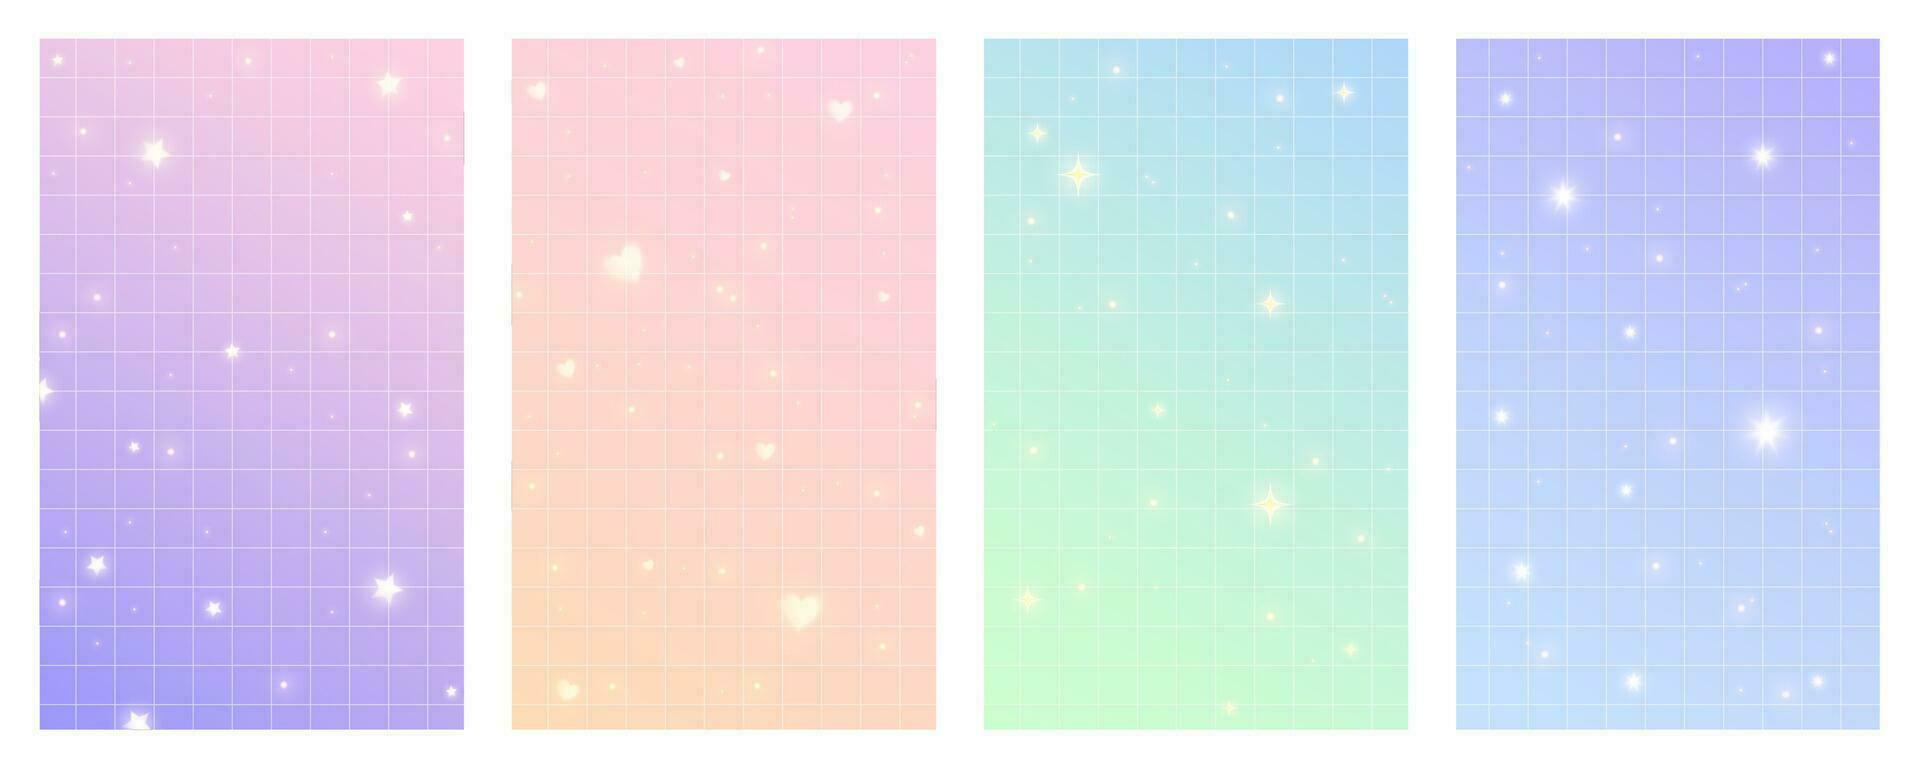 xadrez gradiente fundo com estrelas. conjunto do pastel holográfico kawaii cenários. abstrato vetor roxa quadrado papeis de parede para Projeto.